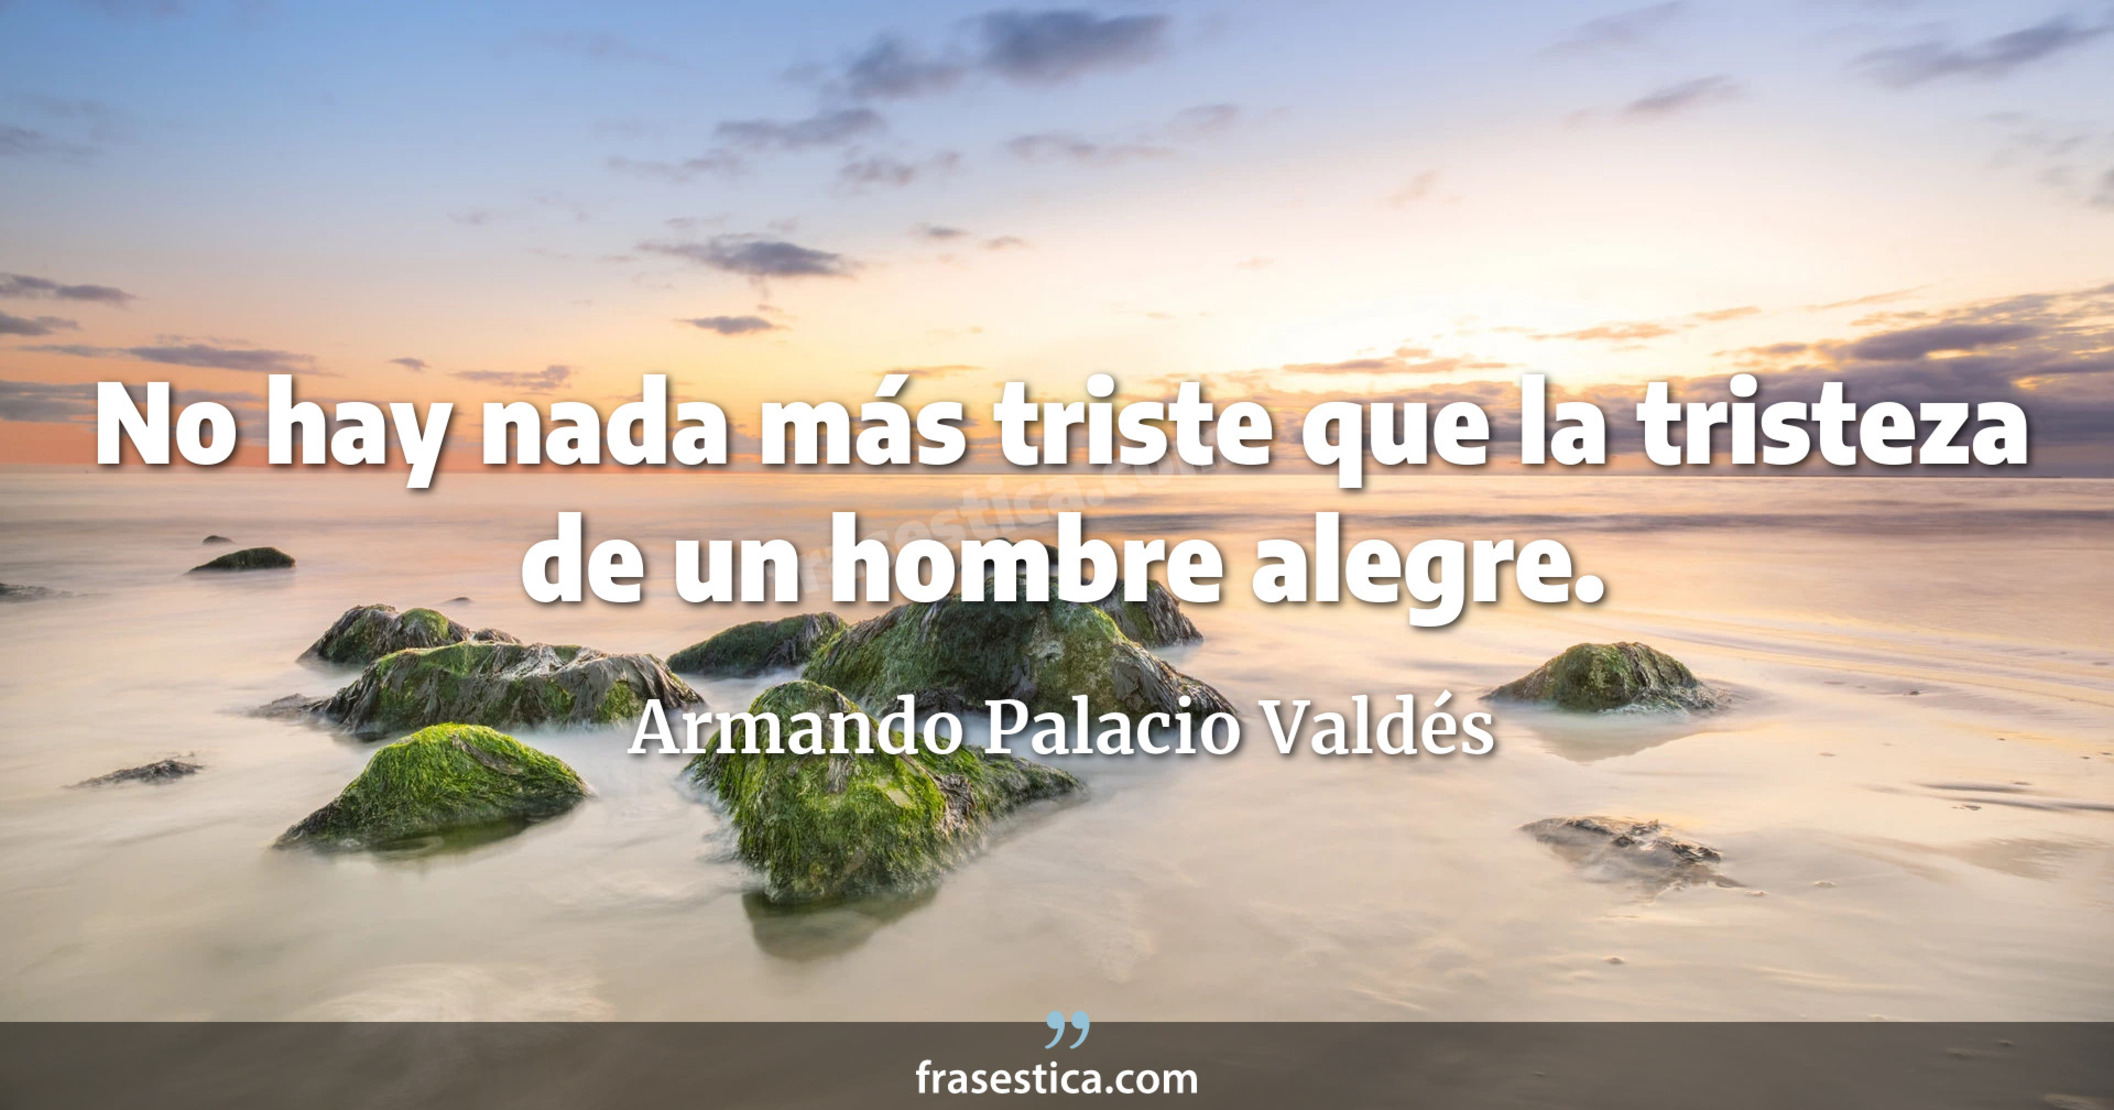 No hay nada más triste que la tristeza de un hombre alegre. - Armando Palacio Valdés